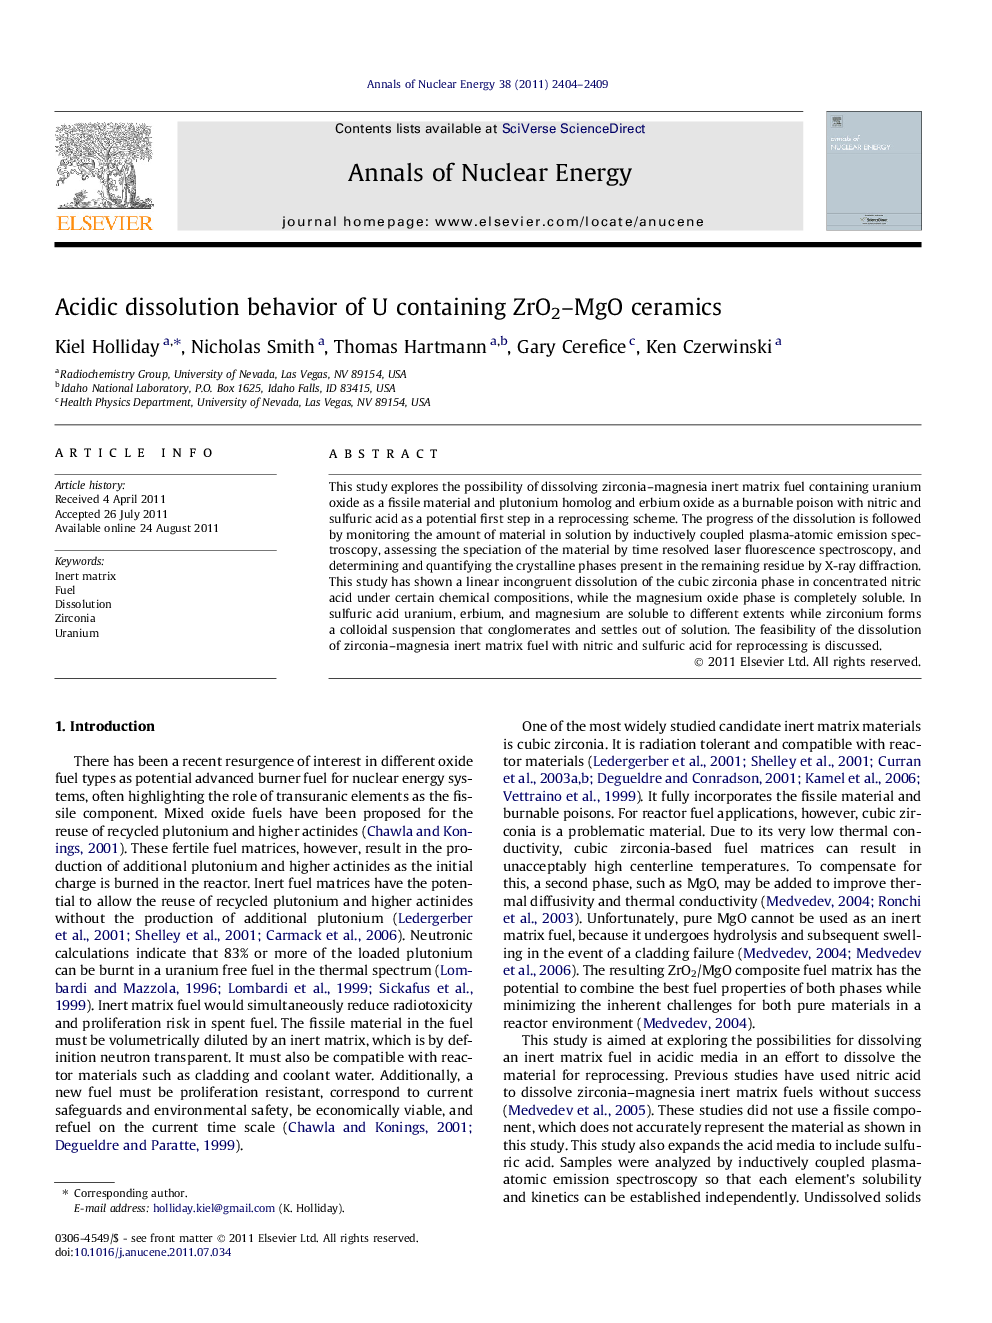 Acidic dissolution behavior of U containing ZrO2-MgO ceramics